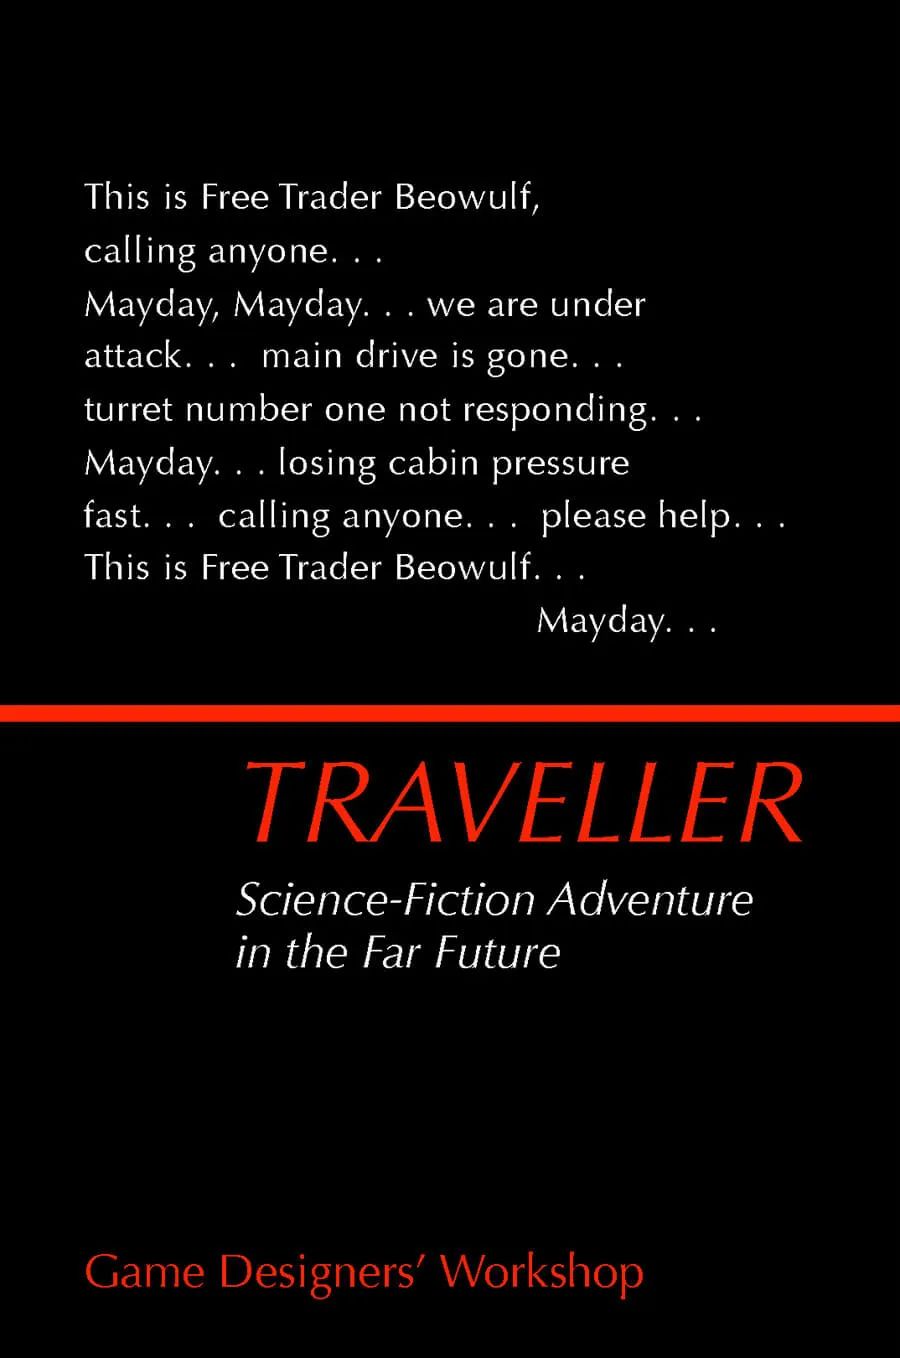 1977年初版《旅行者》游戏封面  副标题为“遥远未来的科幻冒险”